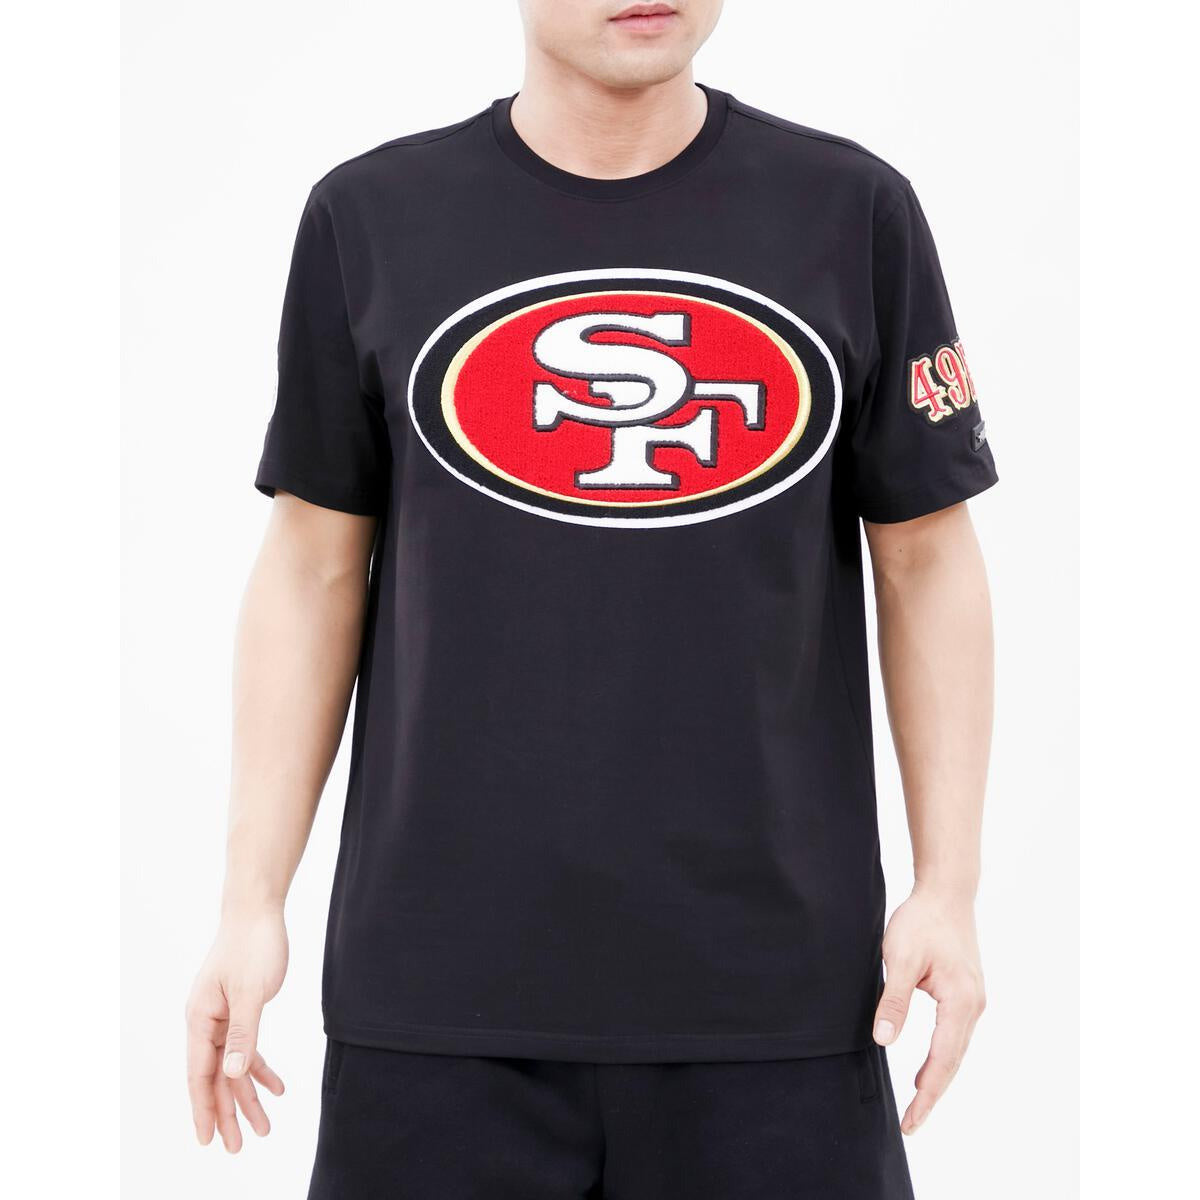 Pro Standard San Francisco 49ers Mash Up Logo Pro Team Shirt- Black (FS4141879-BLK)